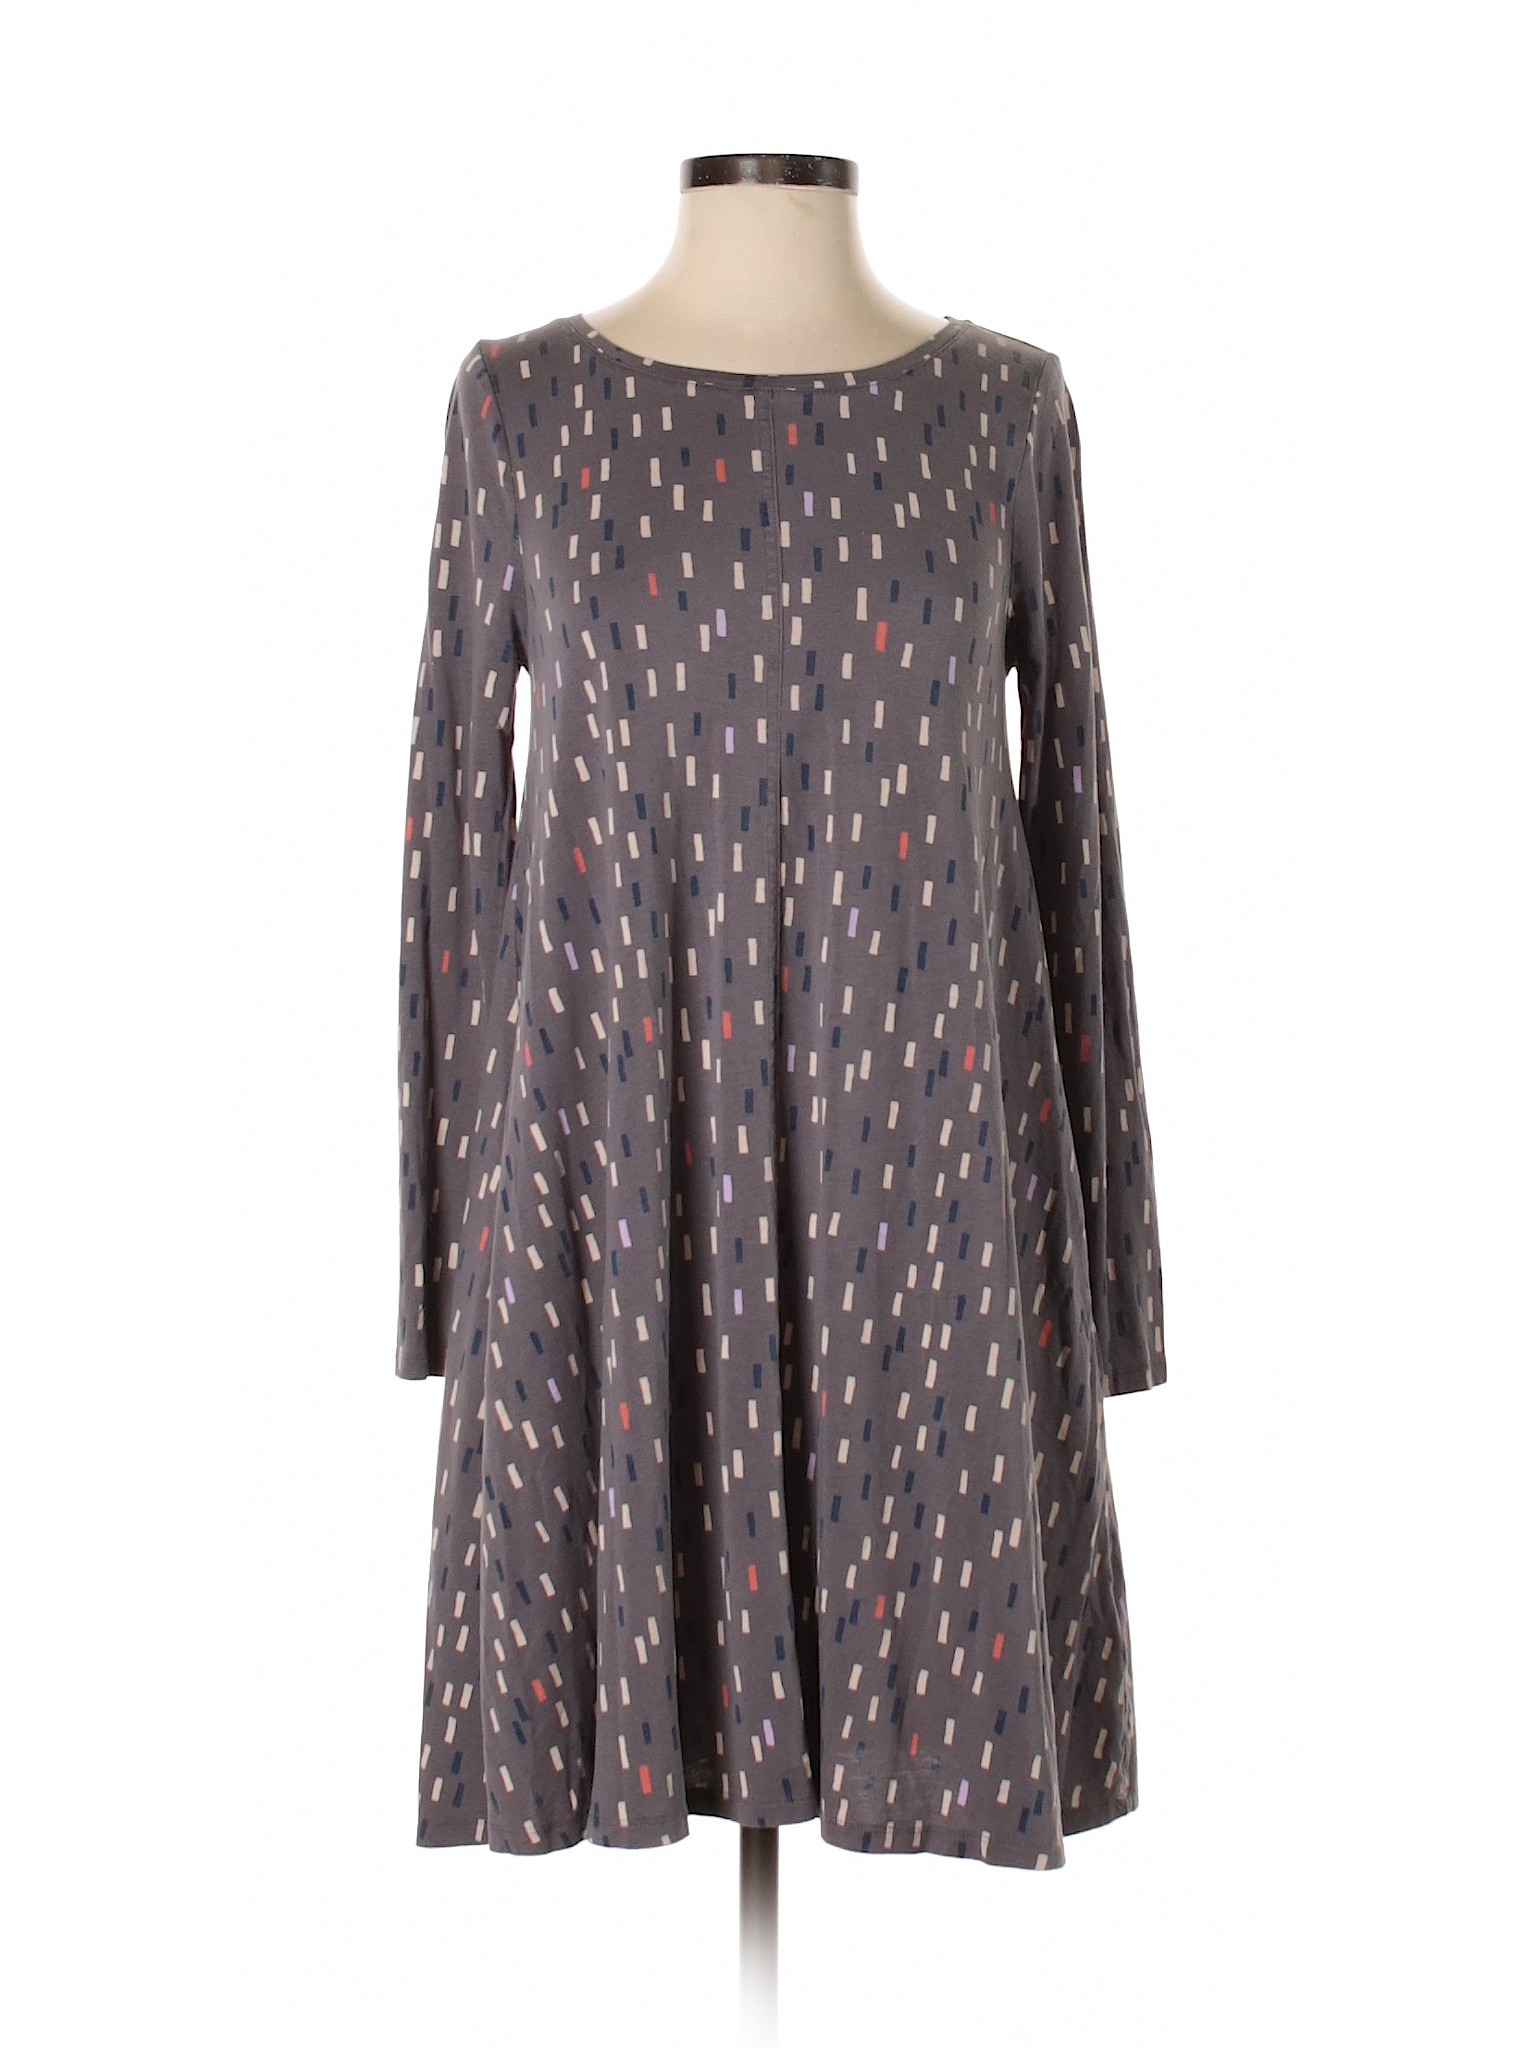 Boden Women Gray Casual Dress 4 Tall | eBay